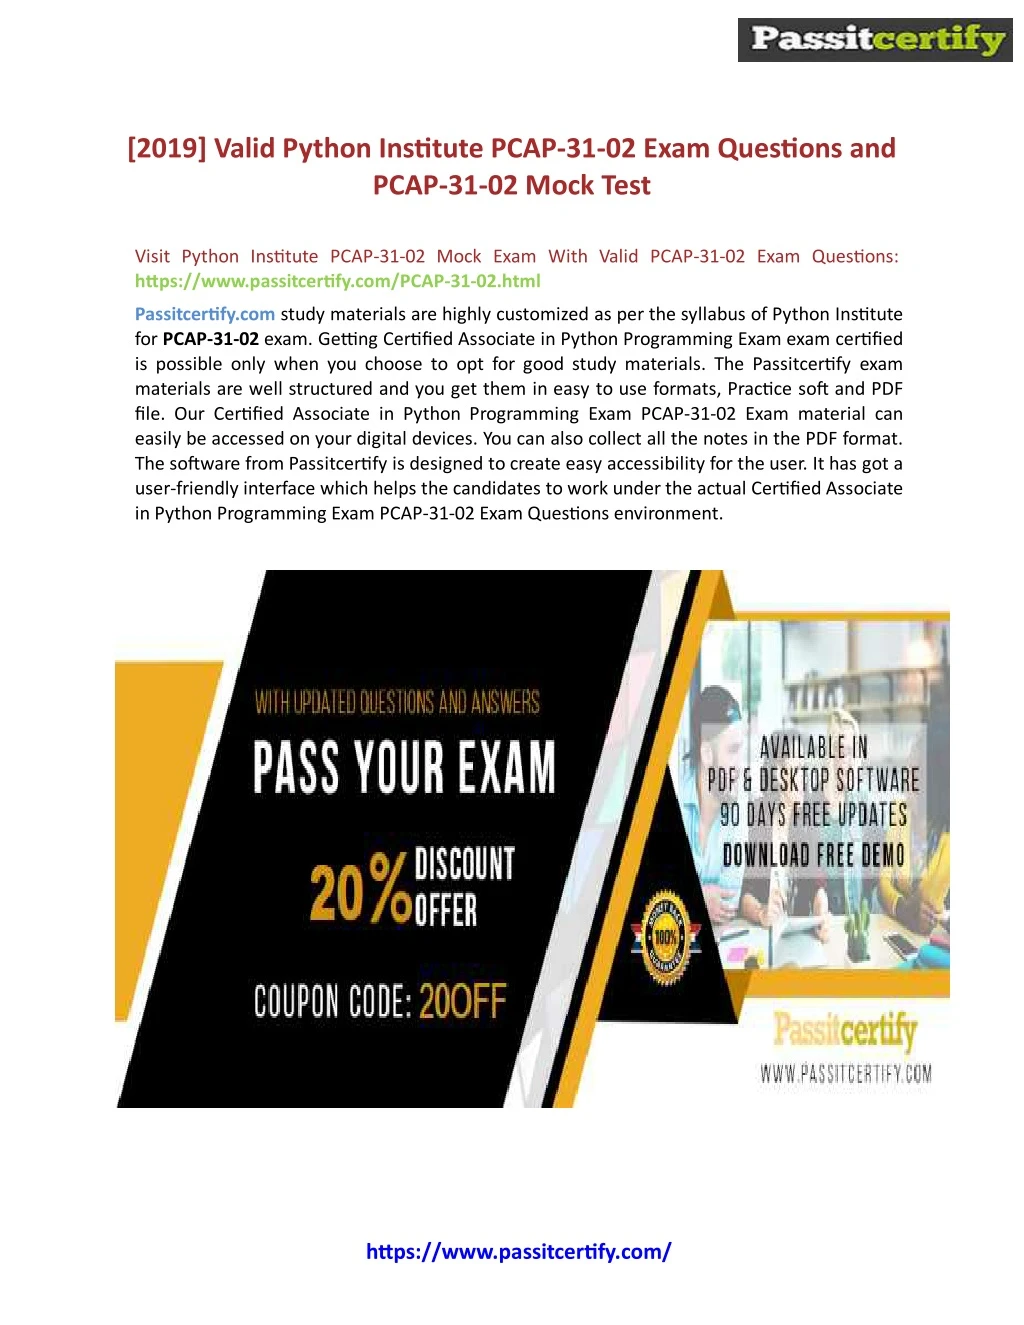 2019 valid python institute pcap 31 02 exam